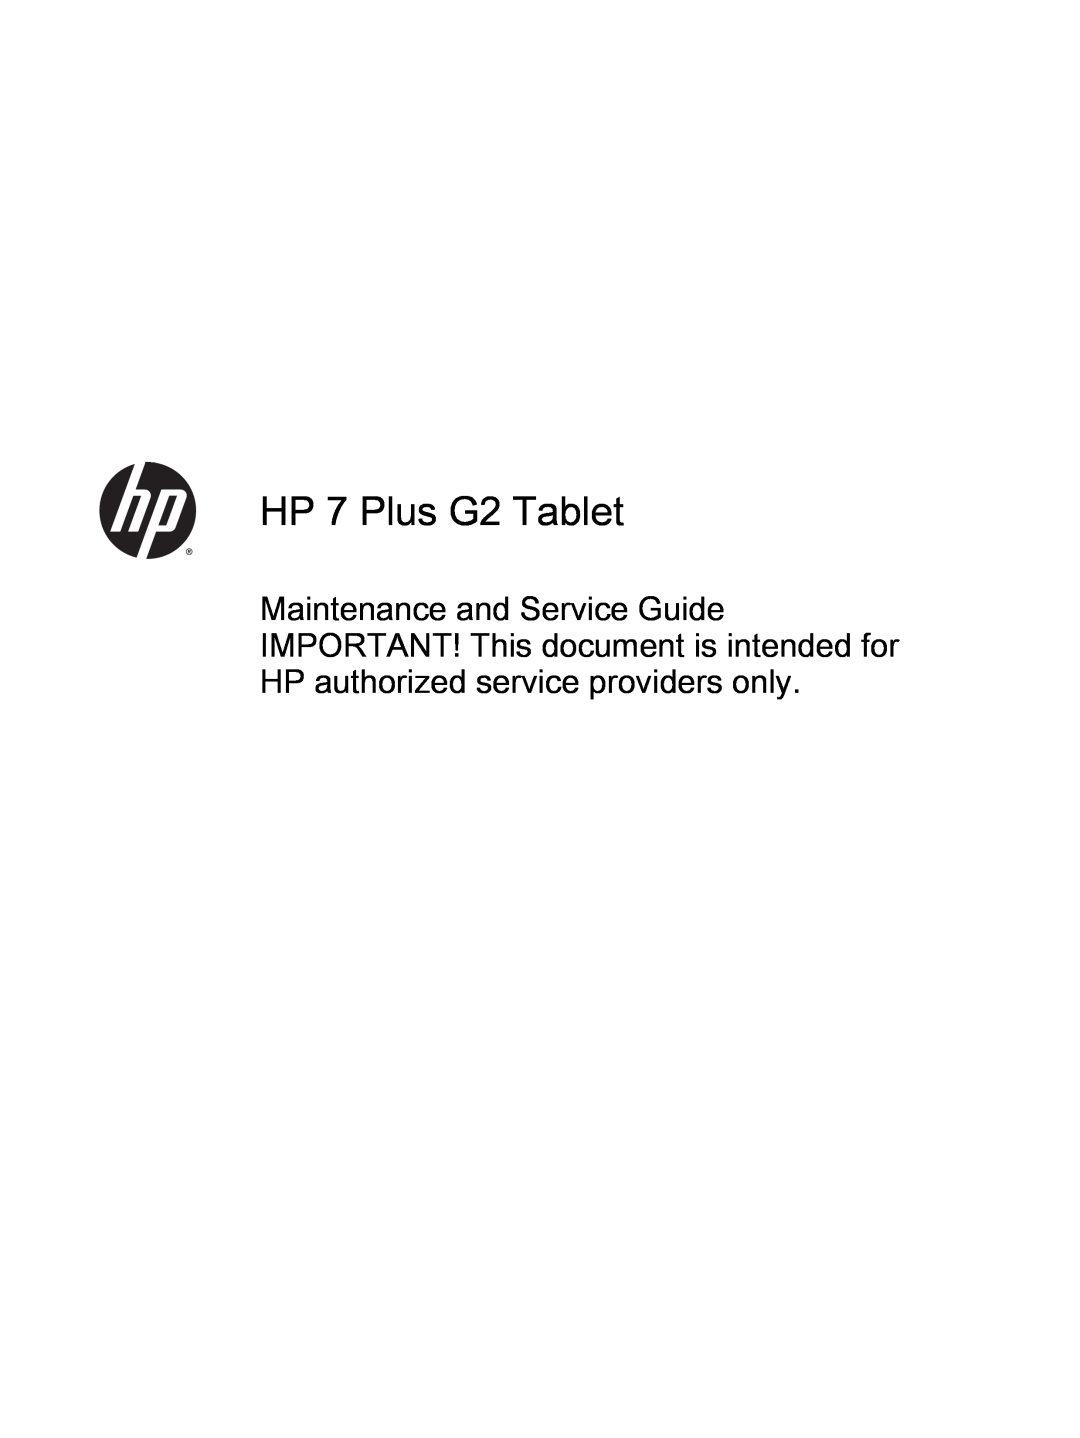 HP 7 Plus G2 - 1331 manual User Guide 